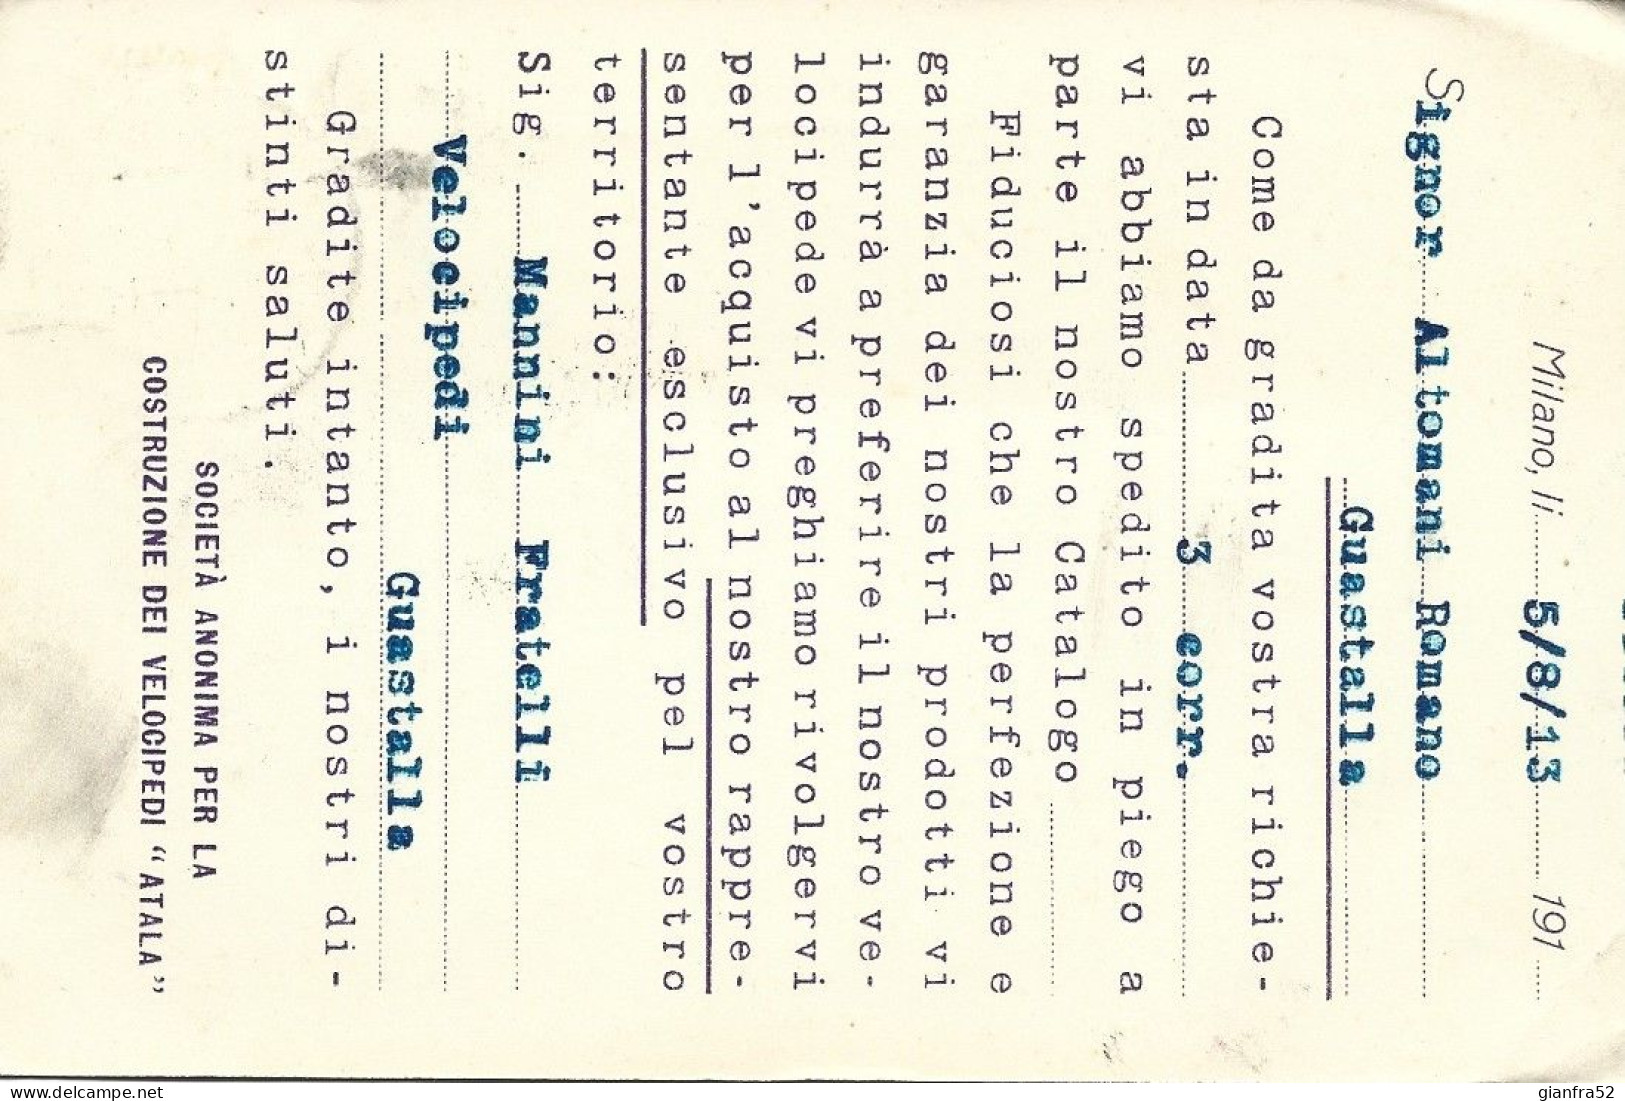 STORIA POSTALE 11/8/1913 CARTOLINA COMMERCIALE ATALA CON CENT. 10 LEONI N. 82 - Publicity